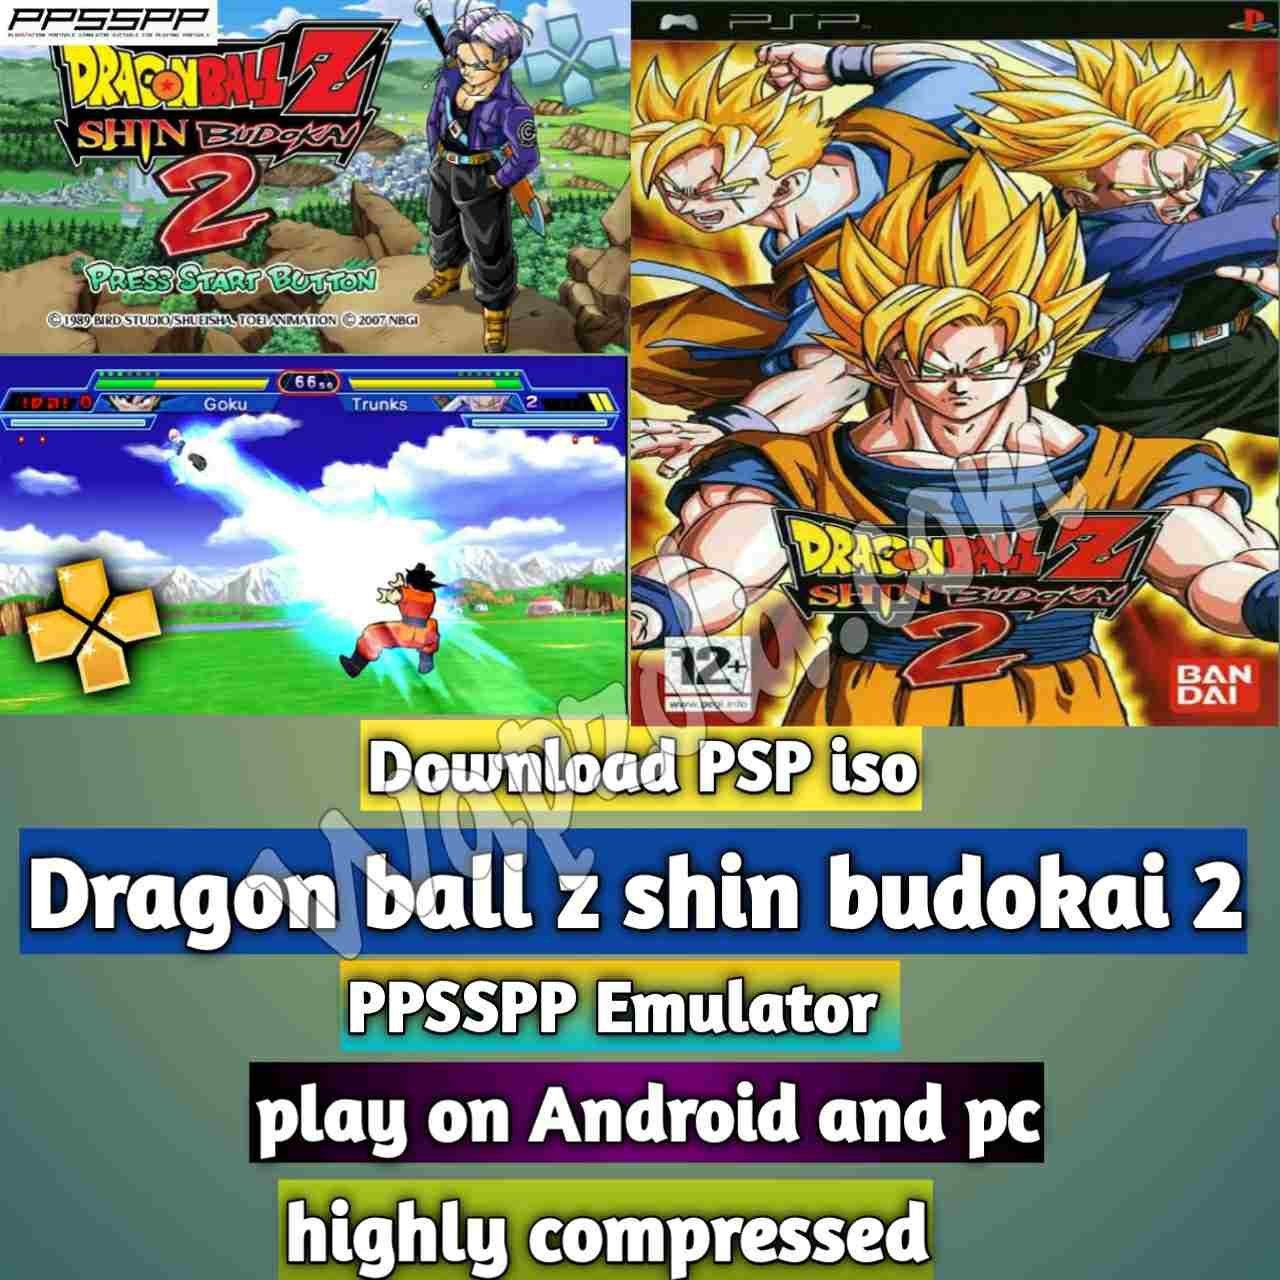 En este momento estás viendo [Download] Dragon ball z shin budokai 2 iso ppsspp emulator – PSP APK Iso ROM altamente comprimido 300MB